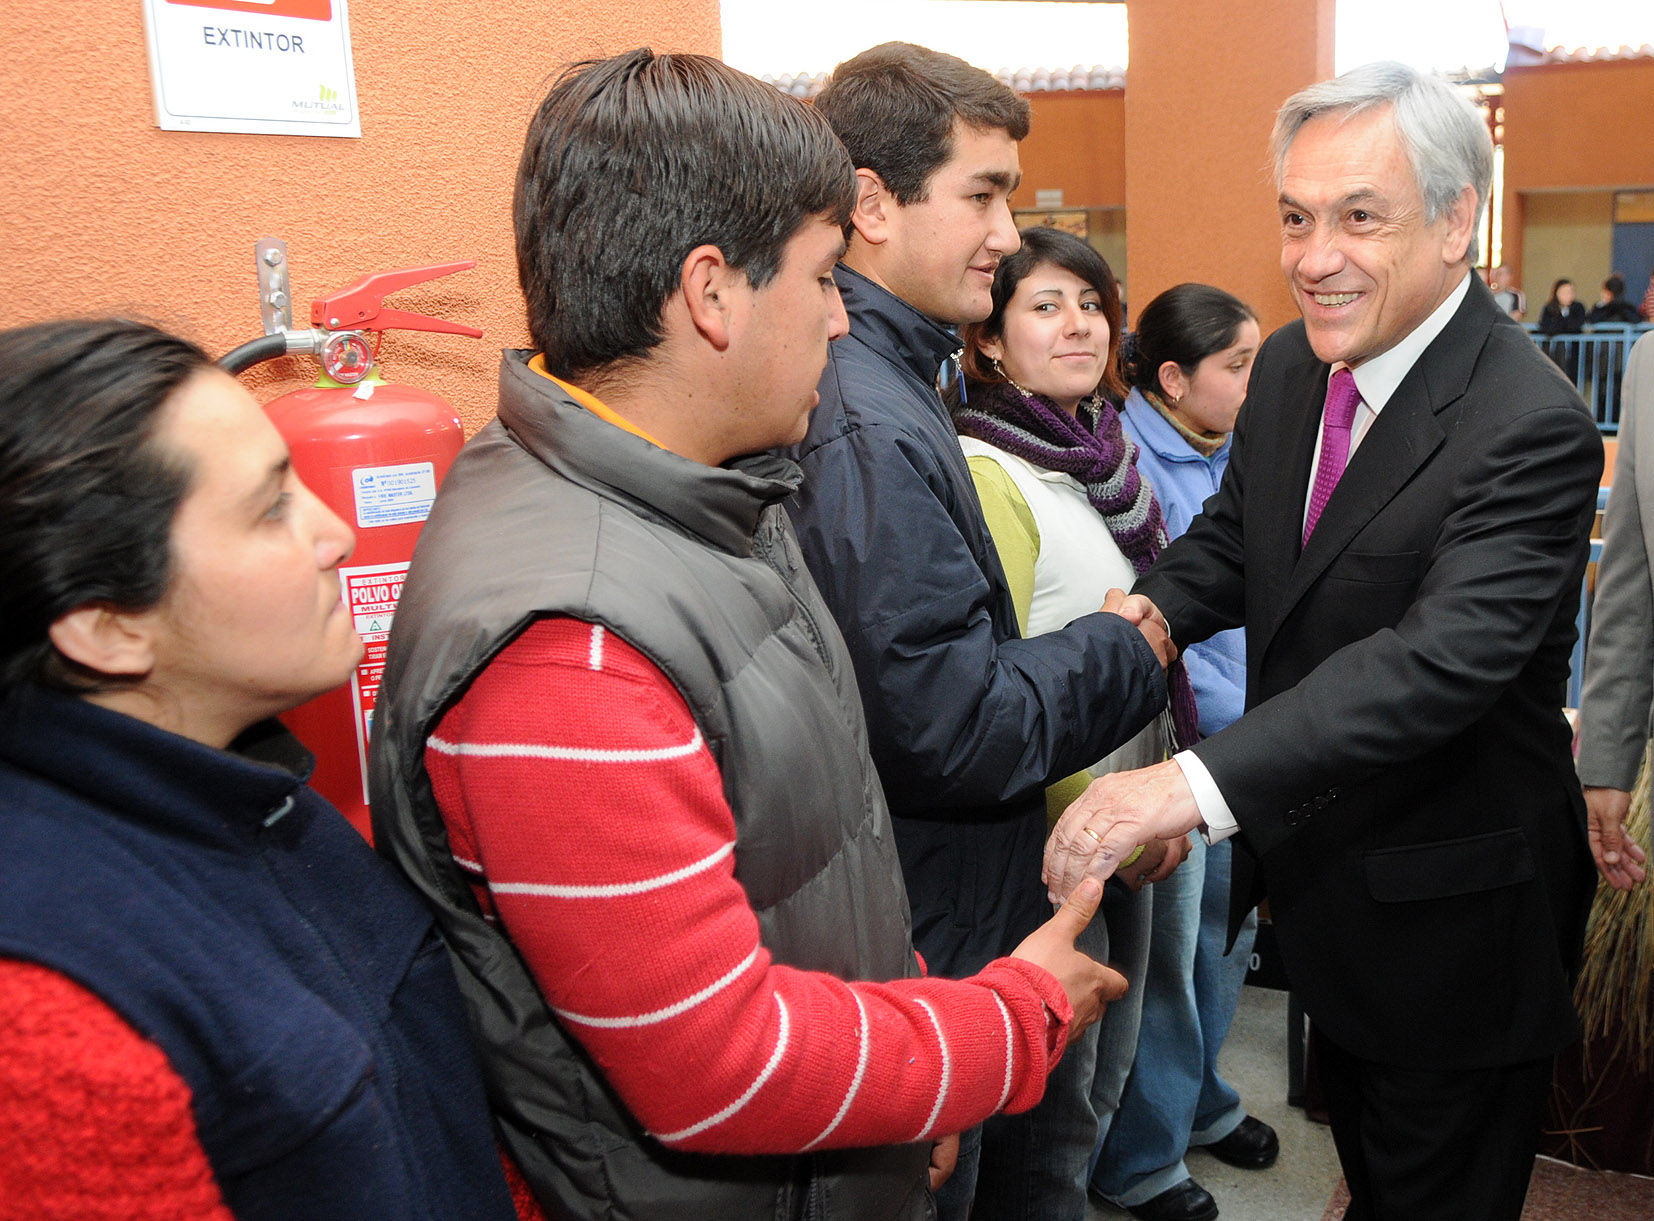 Sebastián Piñera, President of Chile (photo credit: tu Foto con el Presidente/flickr)